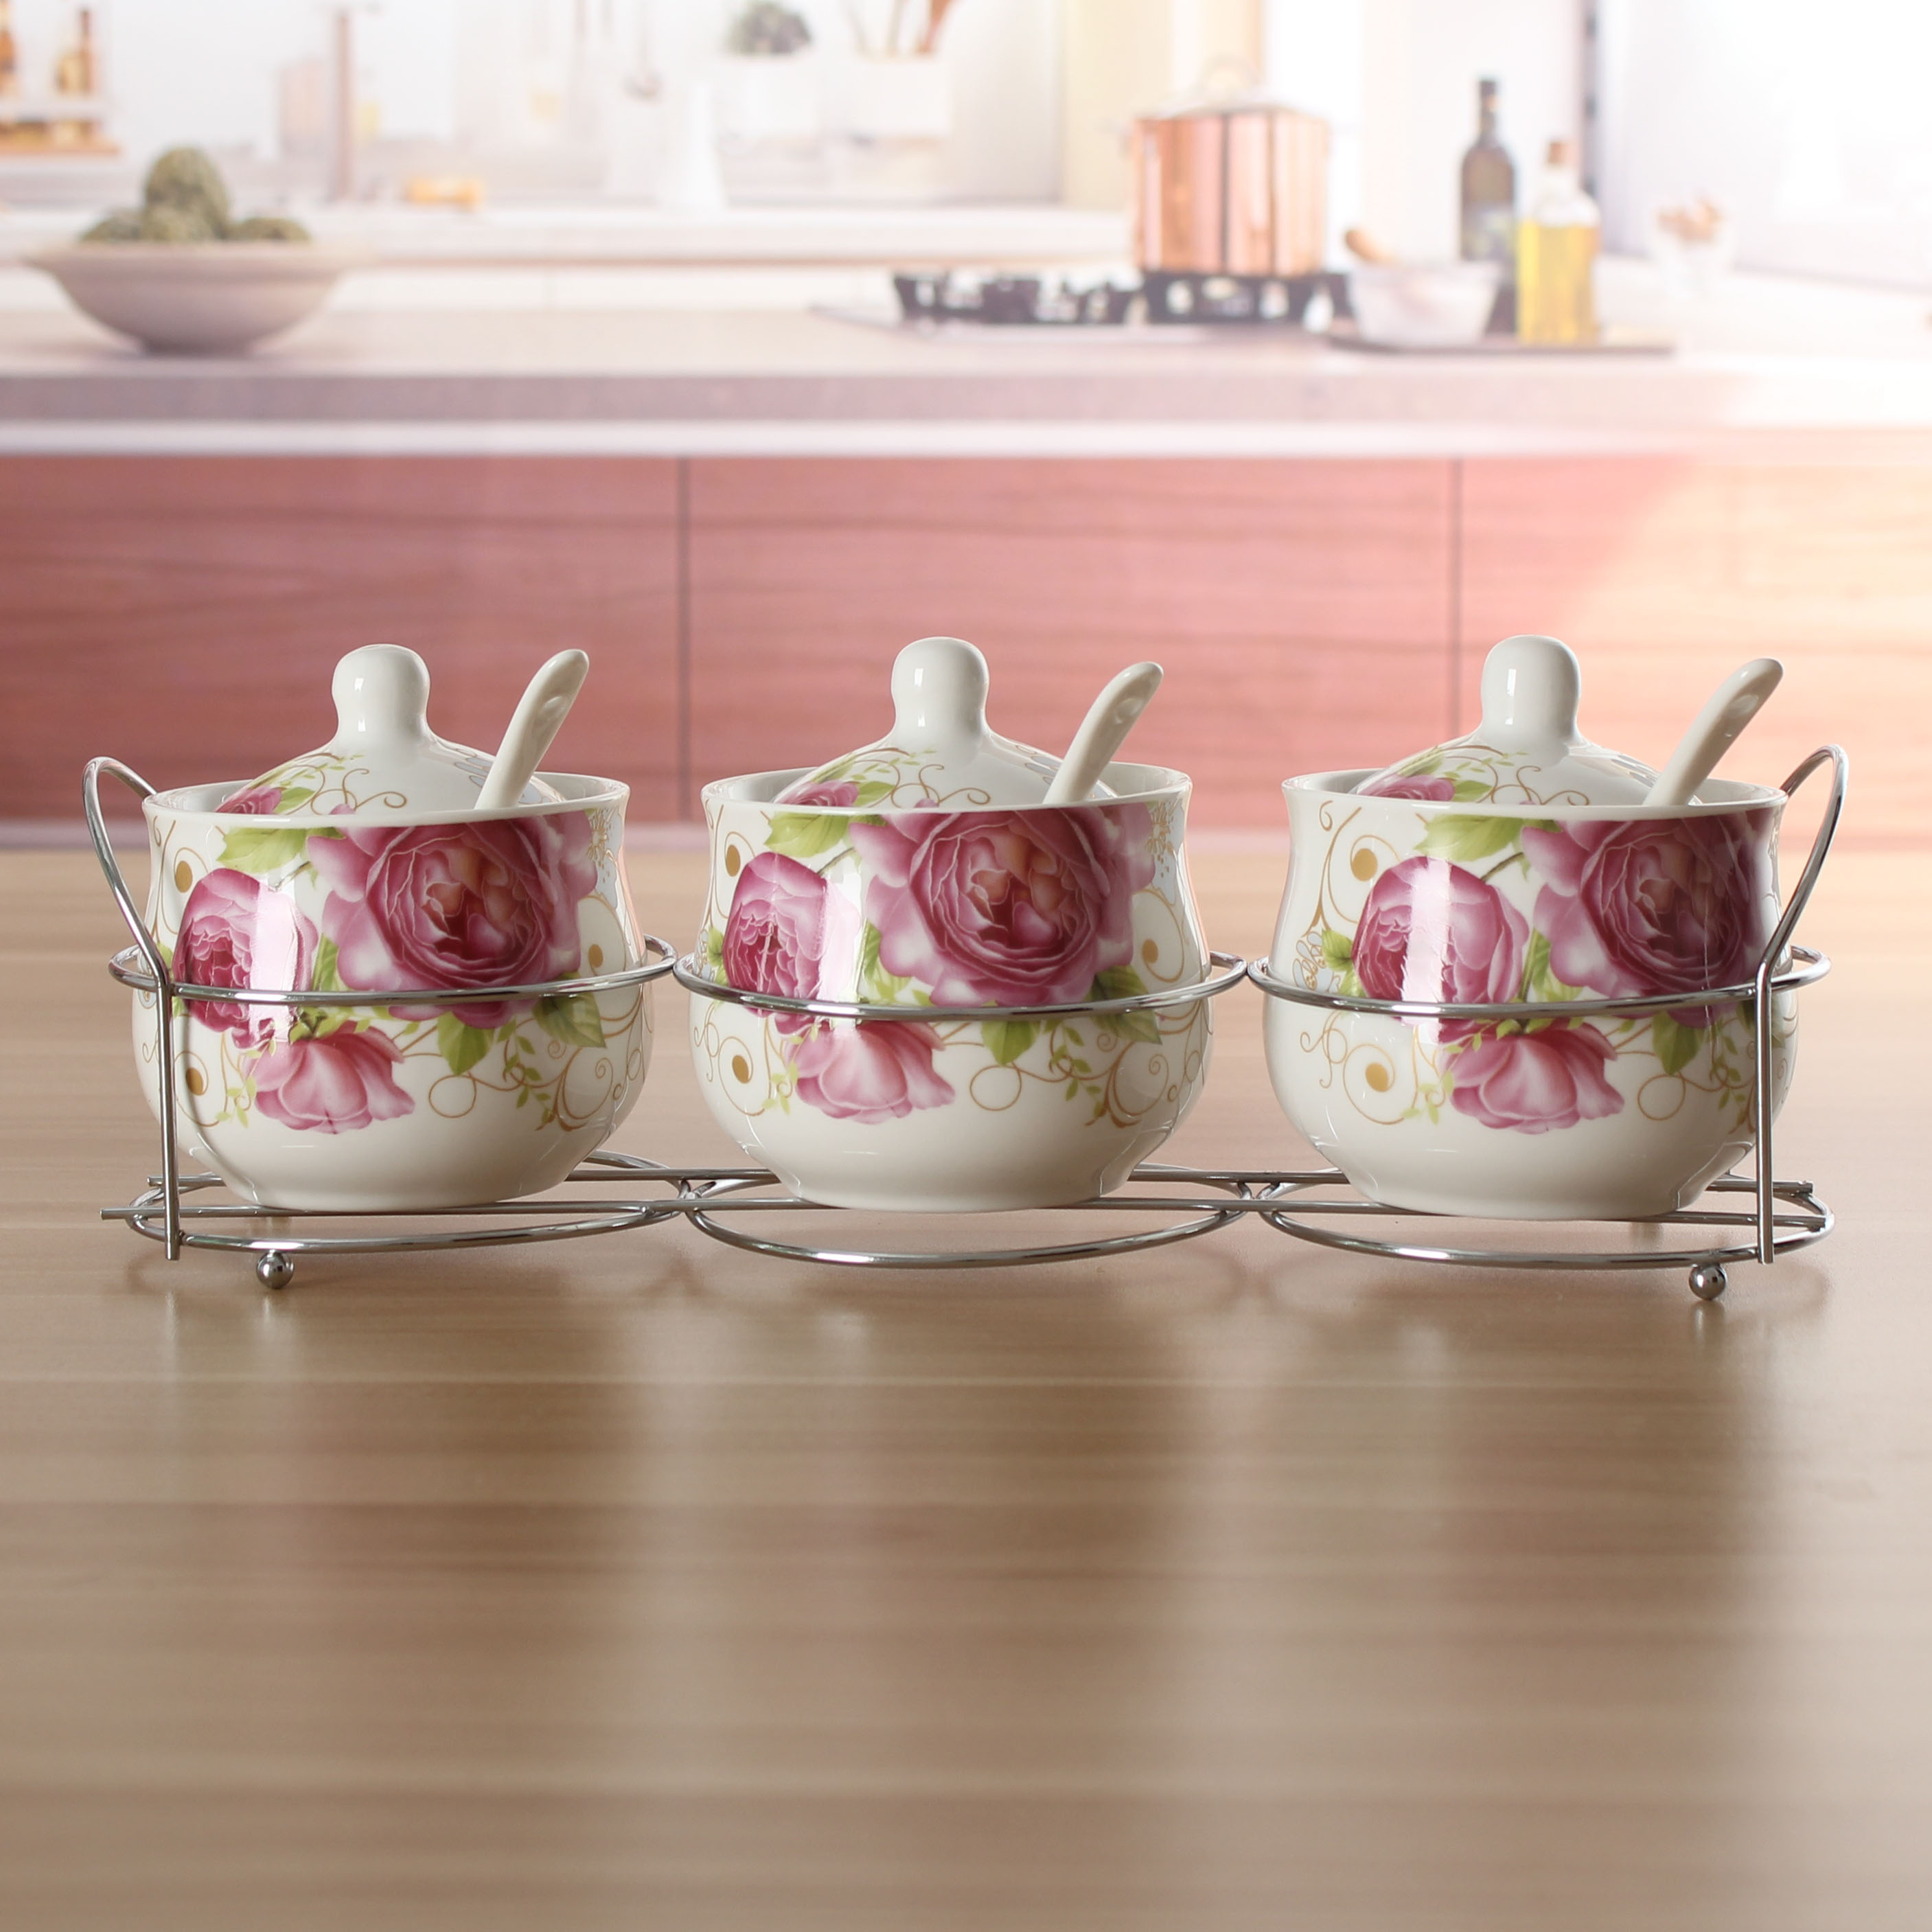 欧式陶瓷调味罐三件套装 金丝玫瑰厨房用品糖盐胡椒罐缸瓶创意